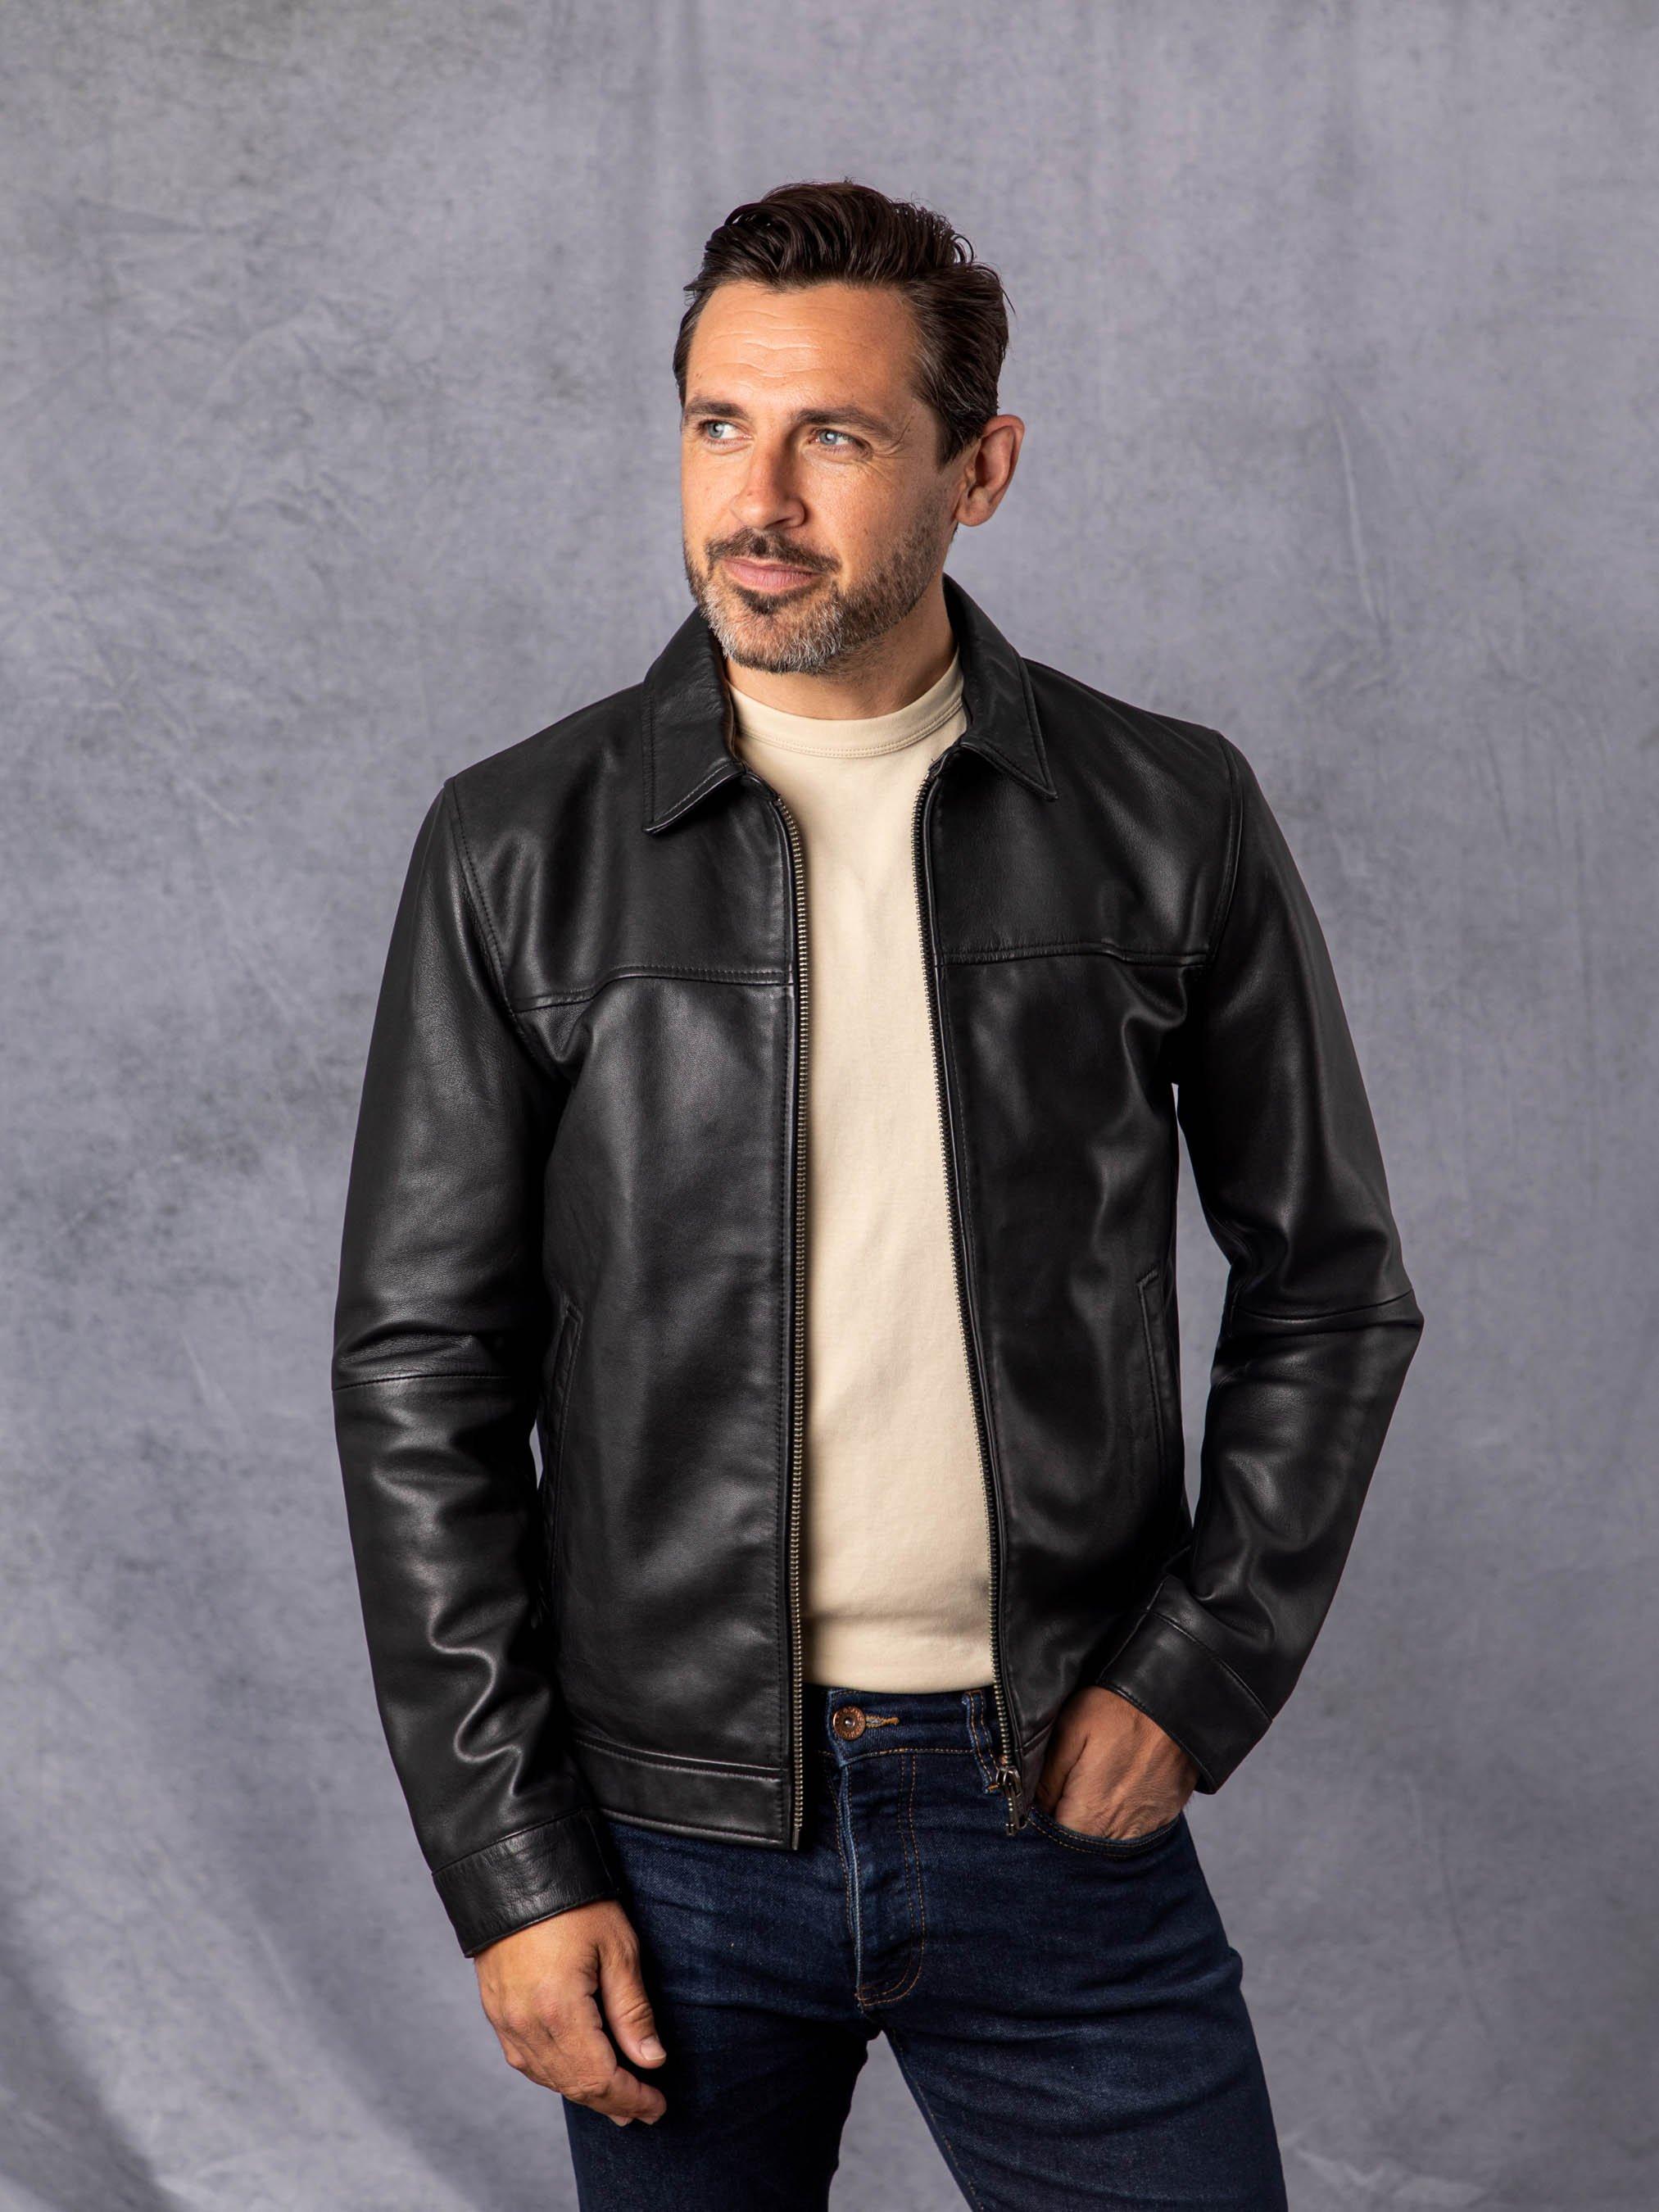 Leather | | & Jackets \'Renwick\' Collared Coats Leather Jacket Lakeland